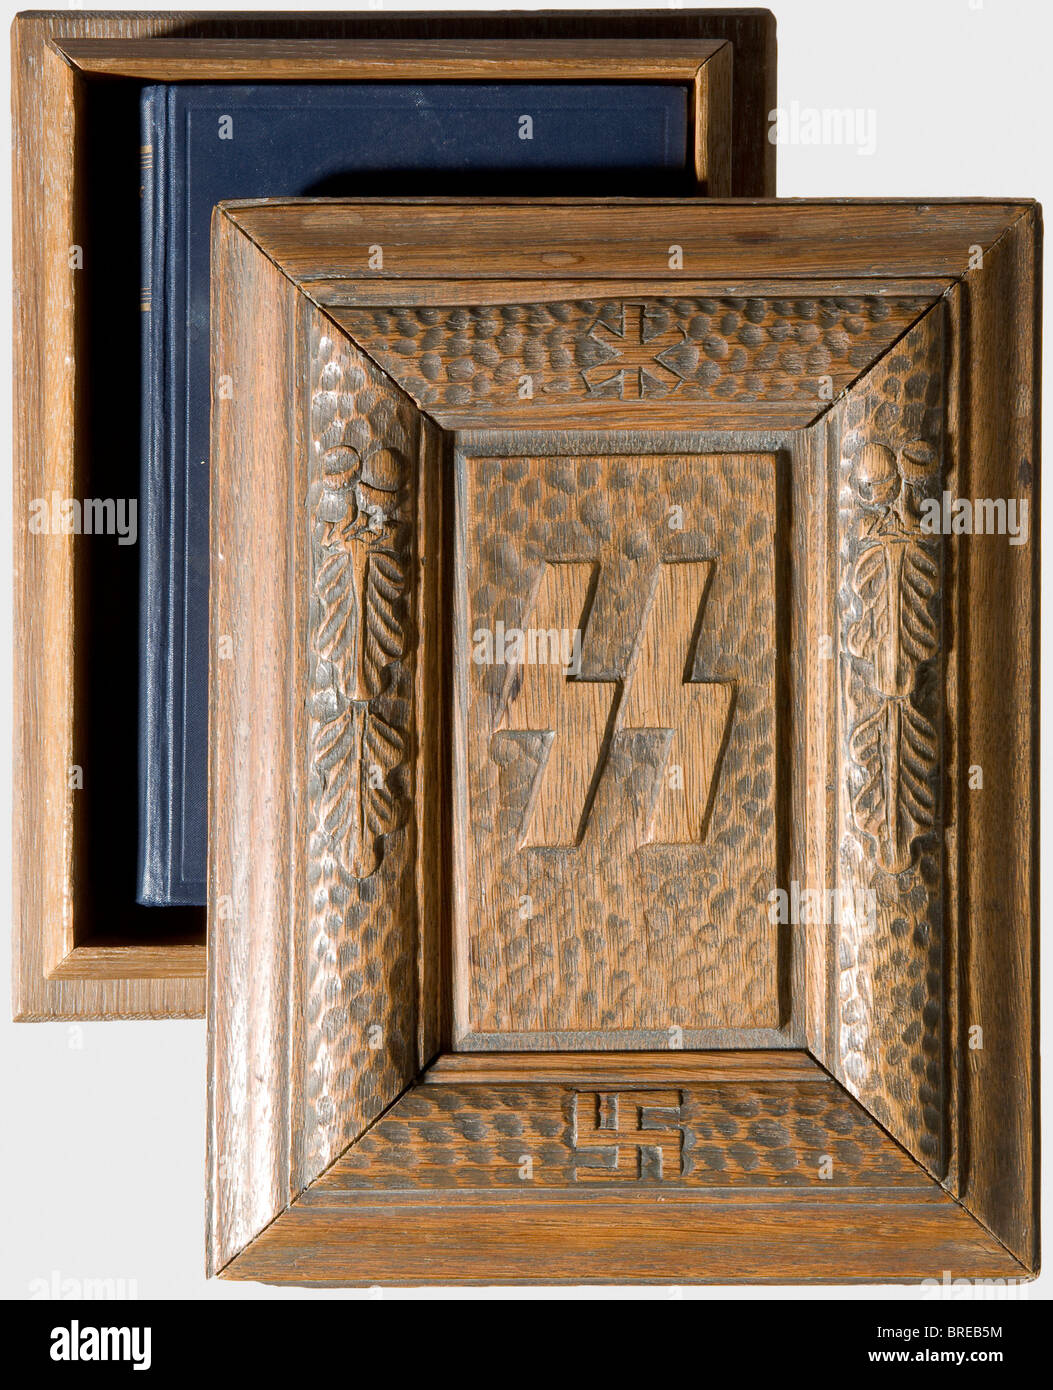 Eine SS-Präsentationskoffer aus Holz für "Mein Kampf"-Eiche mit einem dunkel gefärbten äußeren. Der Deckel (zwei Innenleisten fehlen/werden wiederhergestellt) hat die in der Mitte geschnitzten SS-Runen, die von einem knöcheligen erhöhten Kreis mit Hakenkreuz und Eichenblättern umgeben sind. Abmessungen 25,5 x 19,5 x 8 cm. Im Inneren befindet sich die ungekürzte Ausgabe von 1934 mit der blauen Stoffbindung: Historisch, historisch, 1930er, 20. Jahrhundert, Waffen-SS, bewaffnete SS-Division, bewaffneter Dienst, bewaffnete Dienste, NS, Nationalsozialismus, Nationalsozialismus, Drittes Reich, Deutsches Reich, Deutschland, Militär, Militaria, Utensil, Ausrüstungsgegenstände, Stockfoto